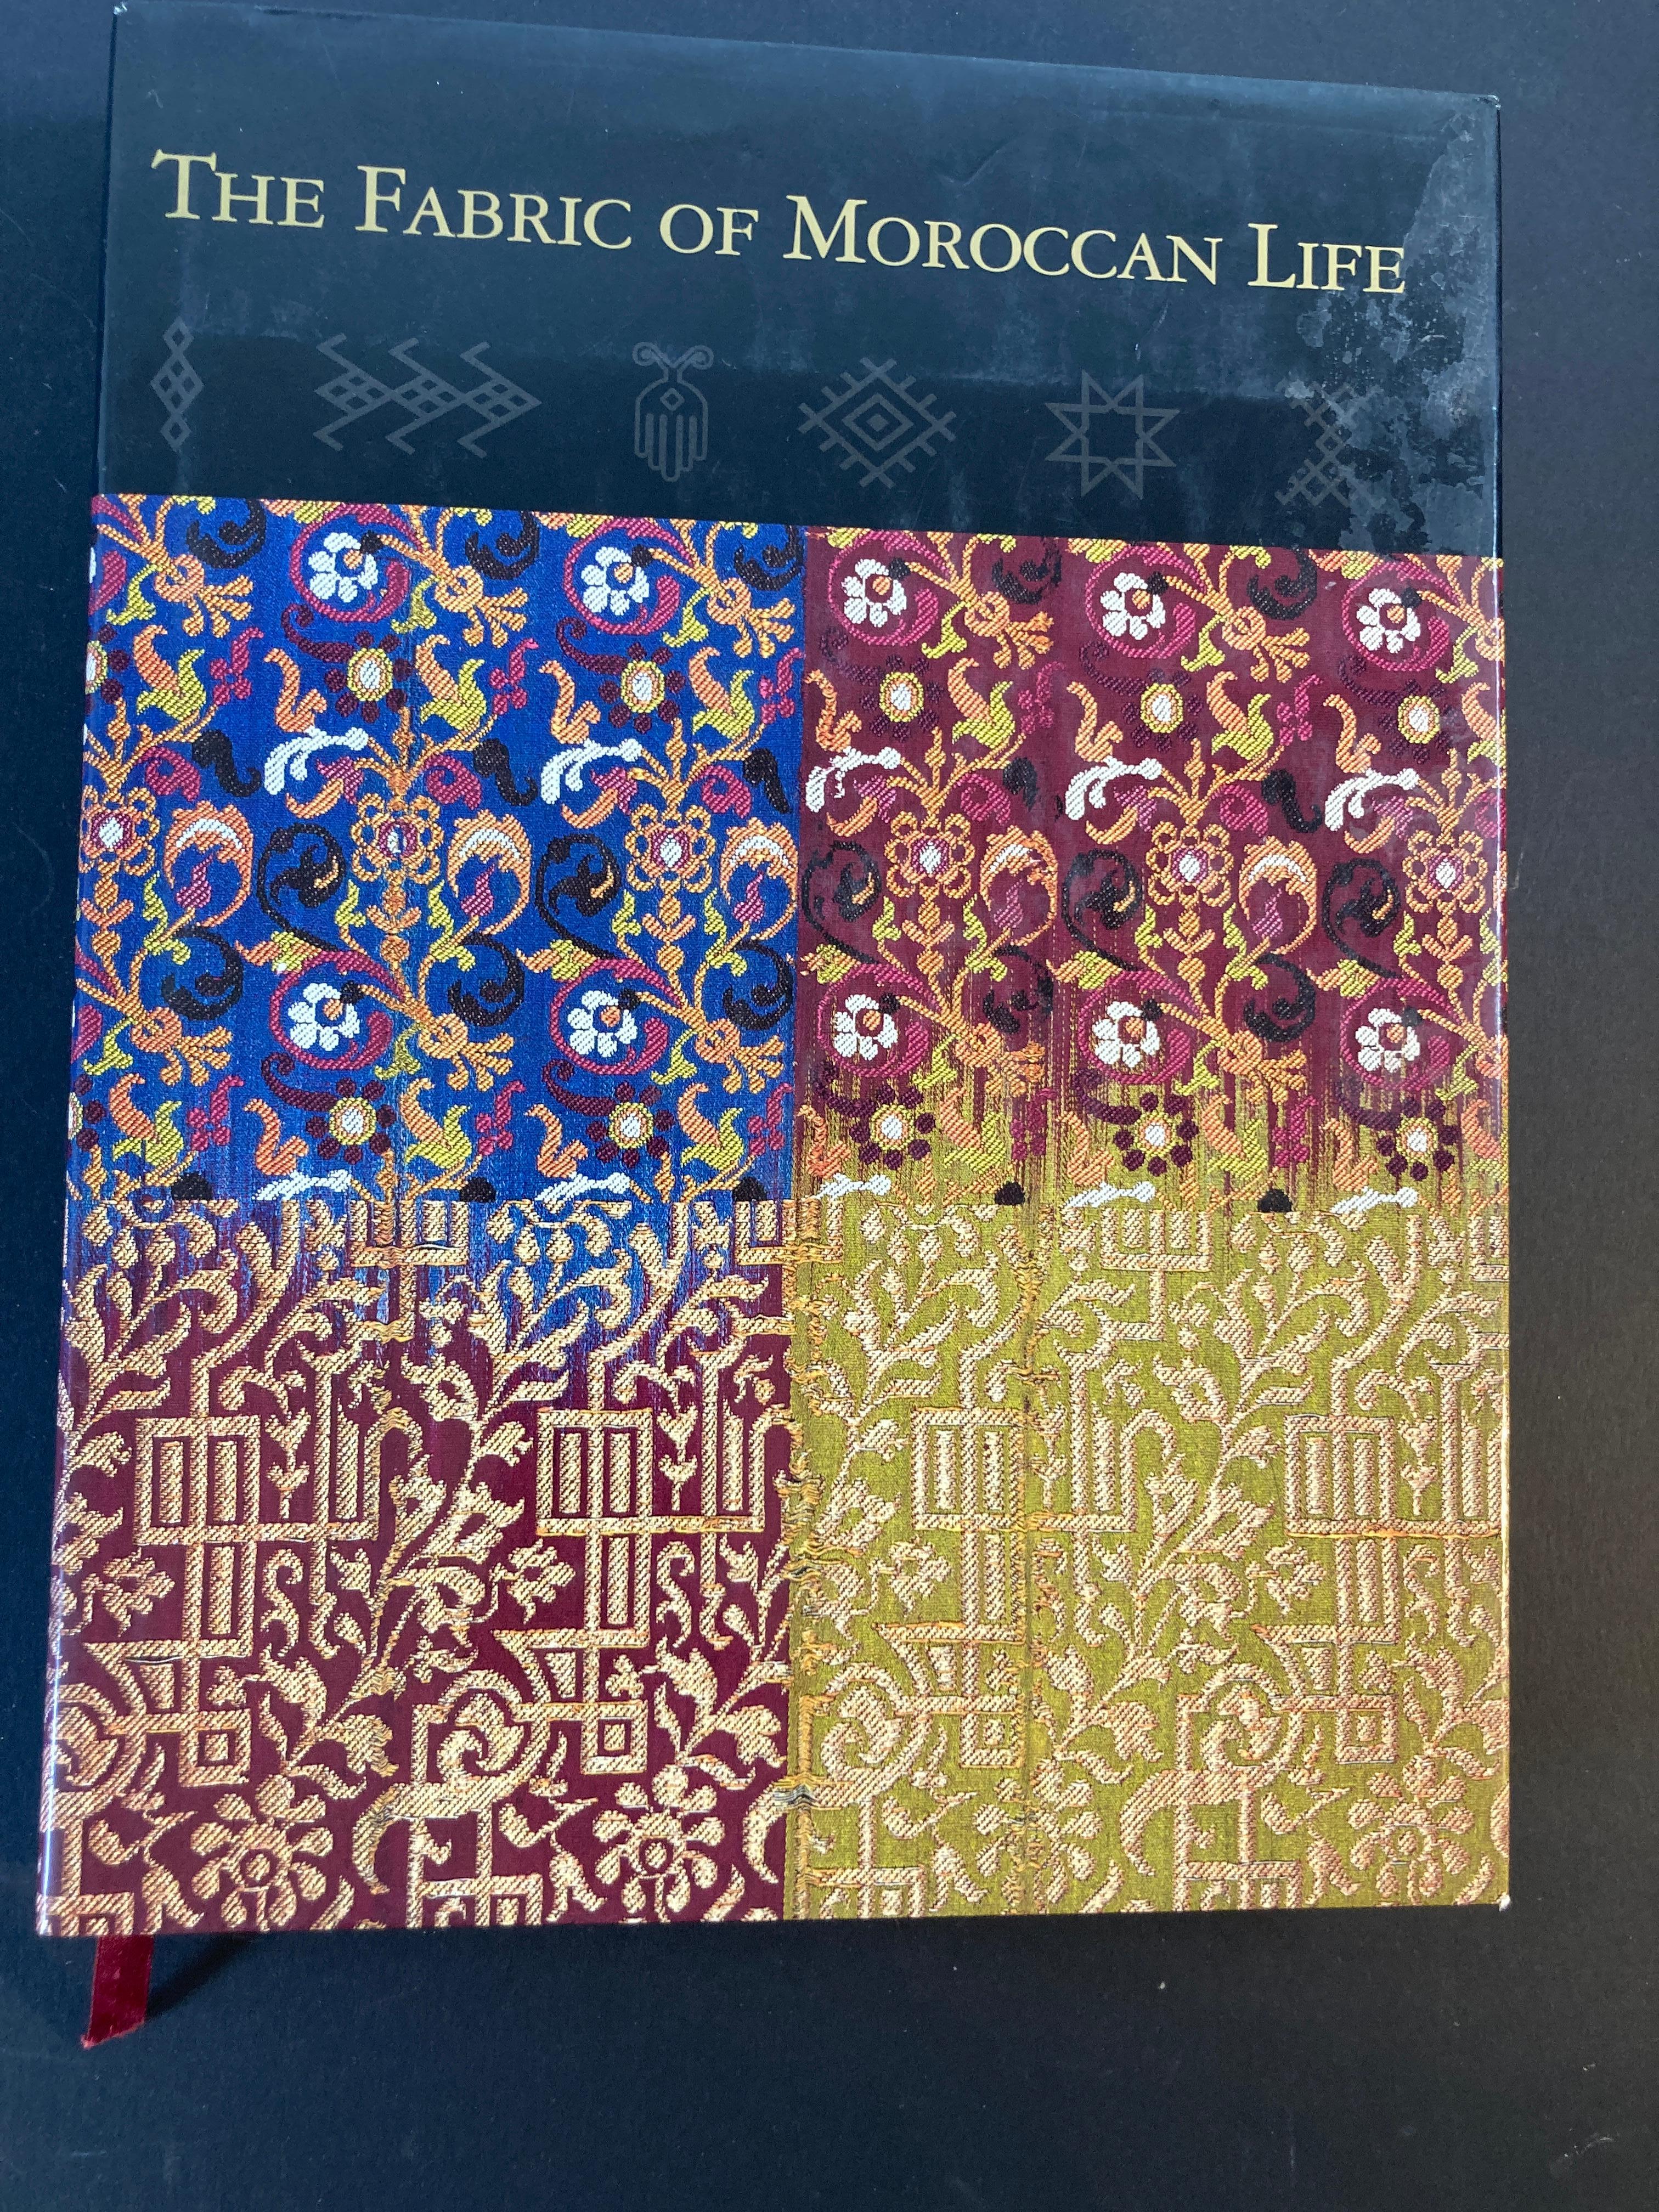 Le tissu de la vie marocaine Livre d'Ivo Grammet et Niloo Imami Paydar.
Par le musée d'art d'Indianapolis.
Depuis des siècles, les habitants du Maroc produisent de magnifiques broderies, tapis à poils et tissages plats. The Fabric of Moroccan Life